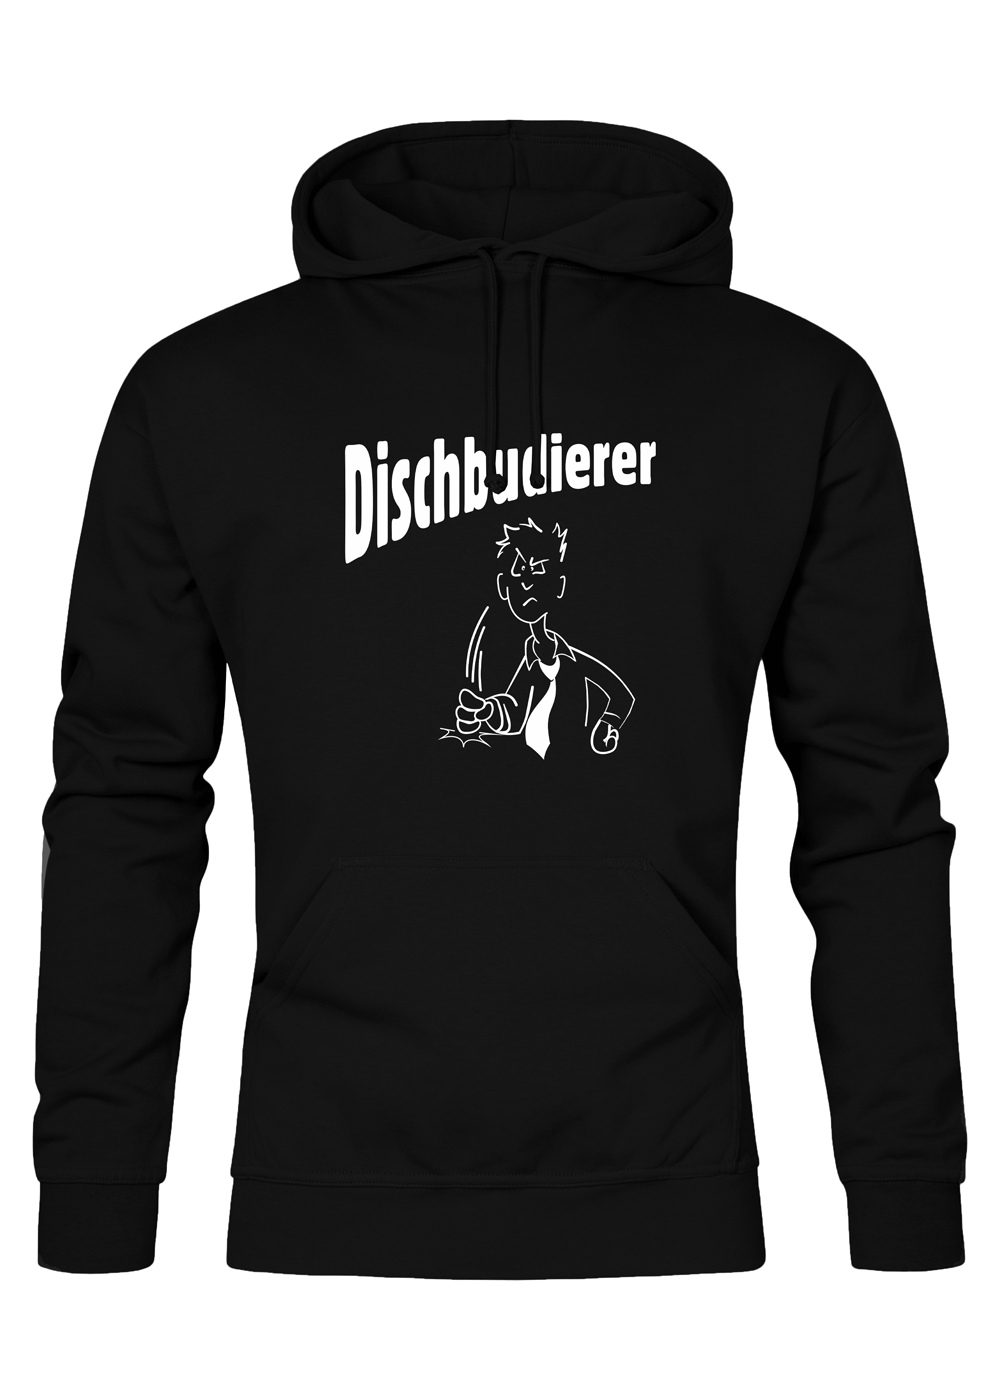 Dischbudierer - Männer Hoodie - Unisex